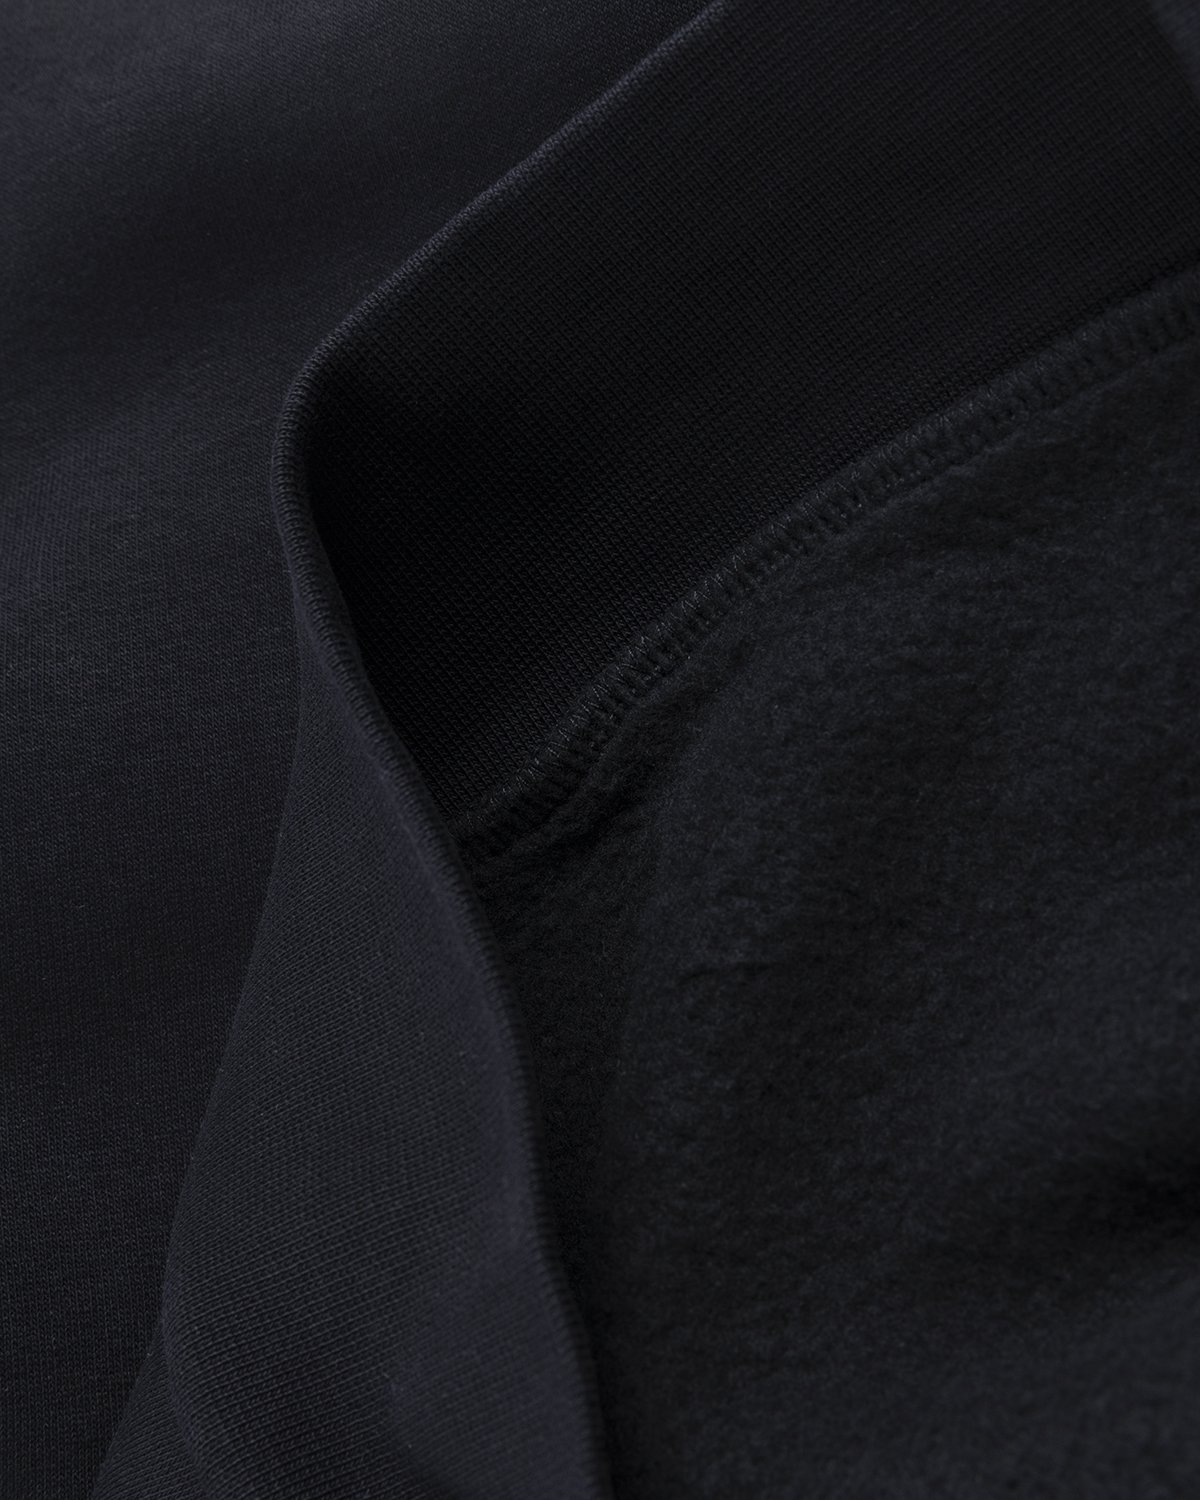 Acne Studios - Brushed Sweatshirt Black - Clothing - Black - Image 3